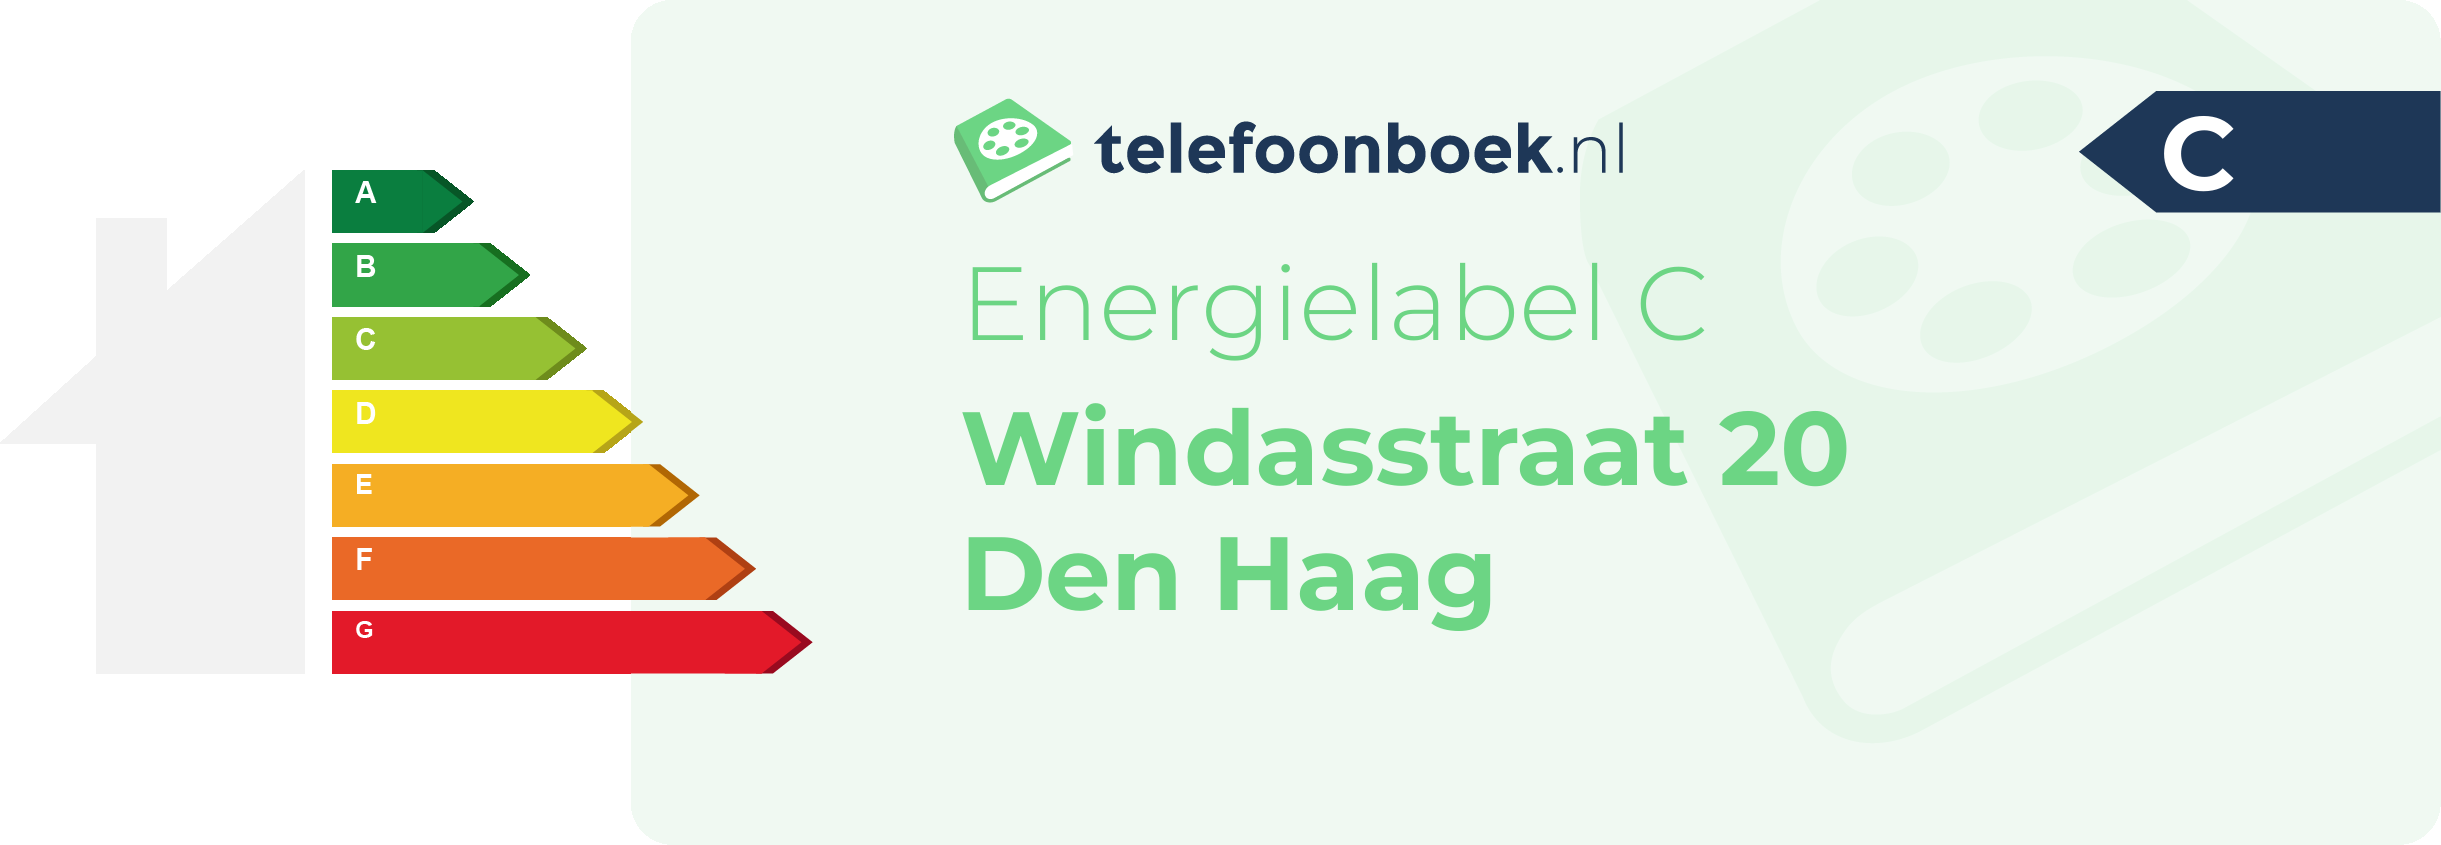 Energielabel Windasstraat 20 Den Haag